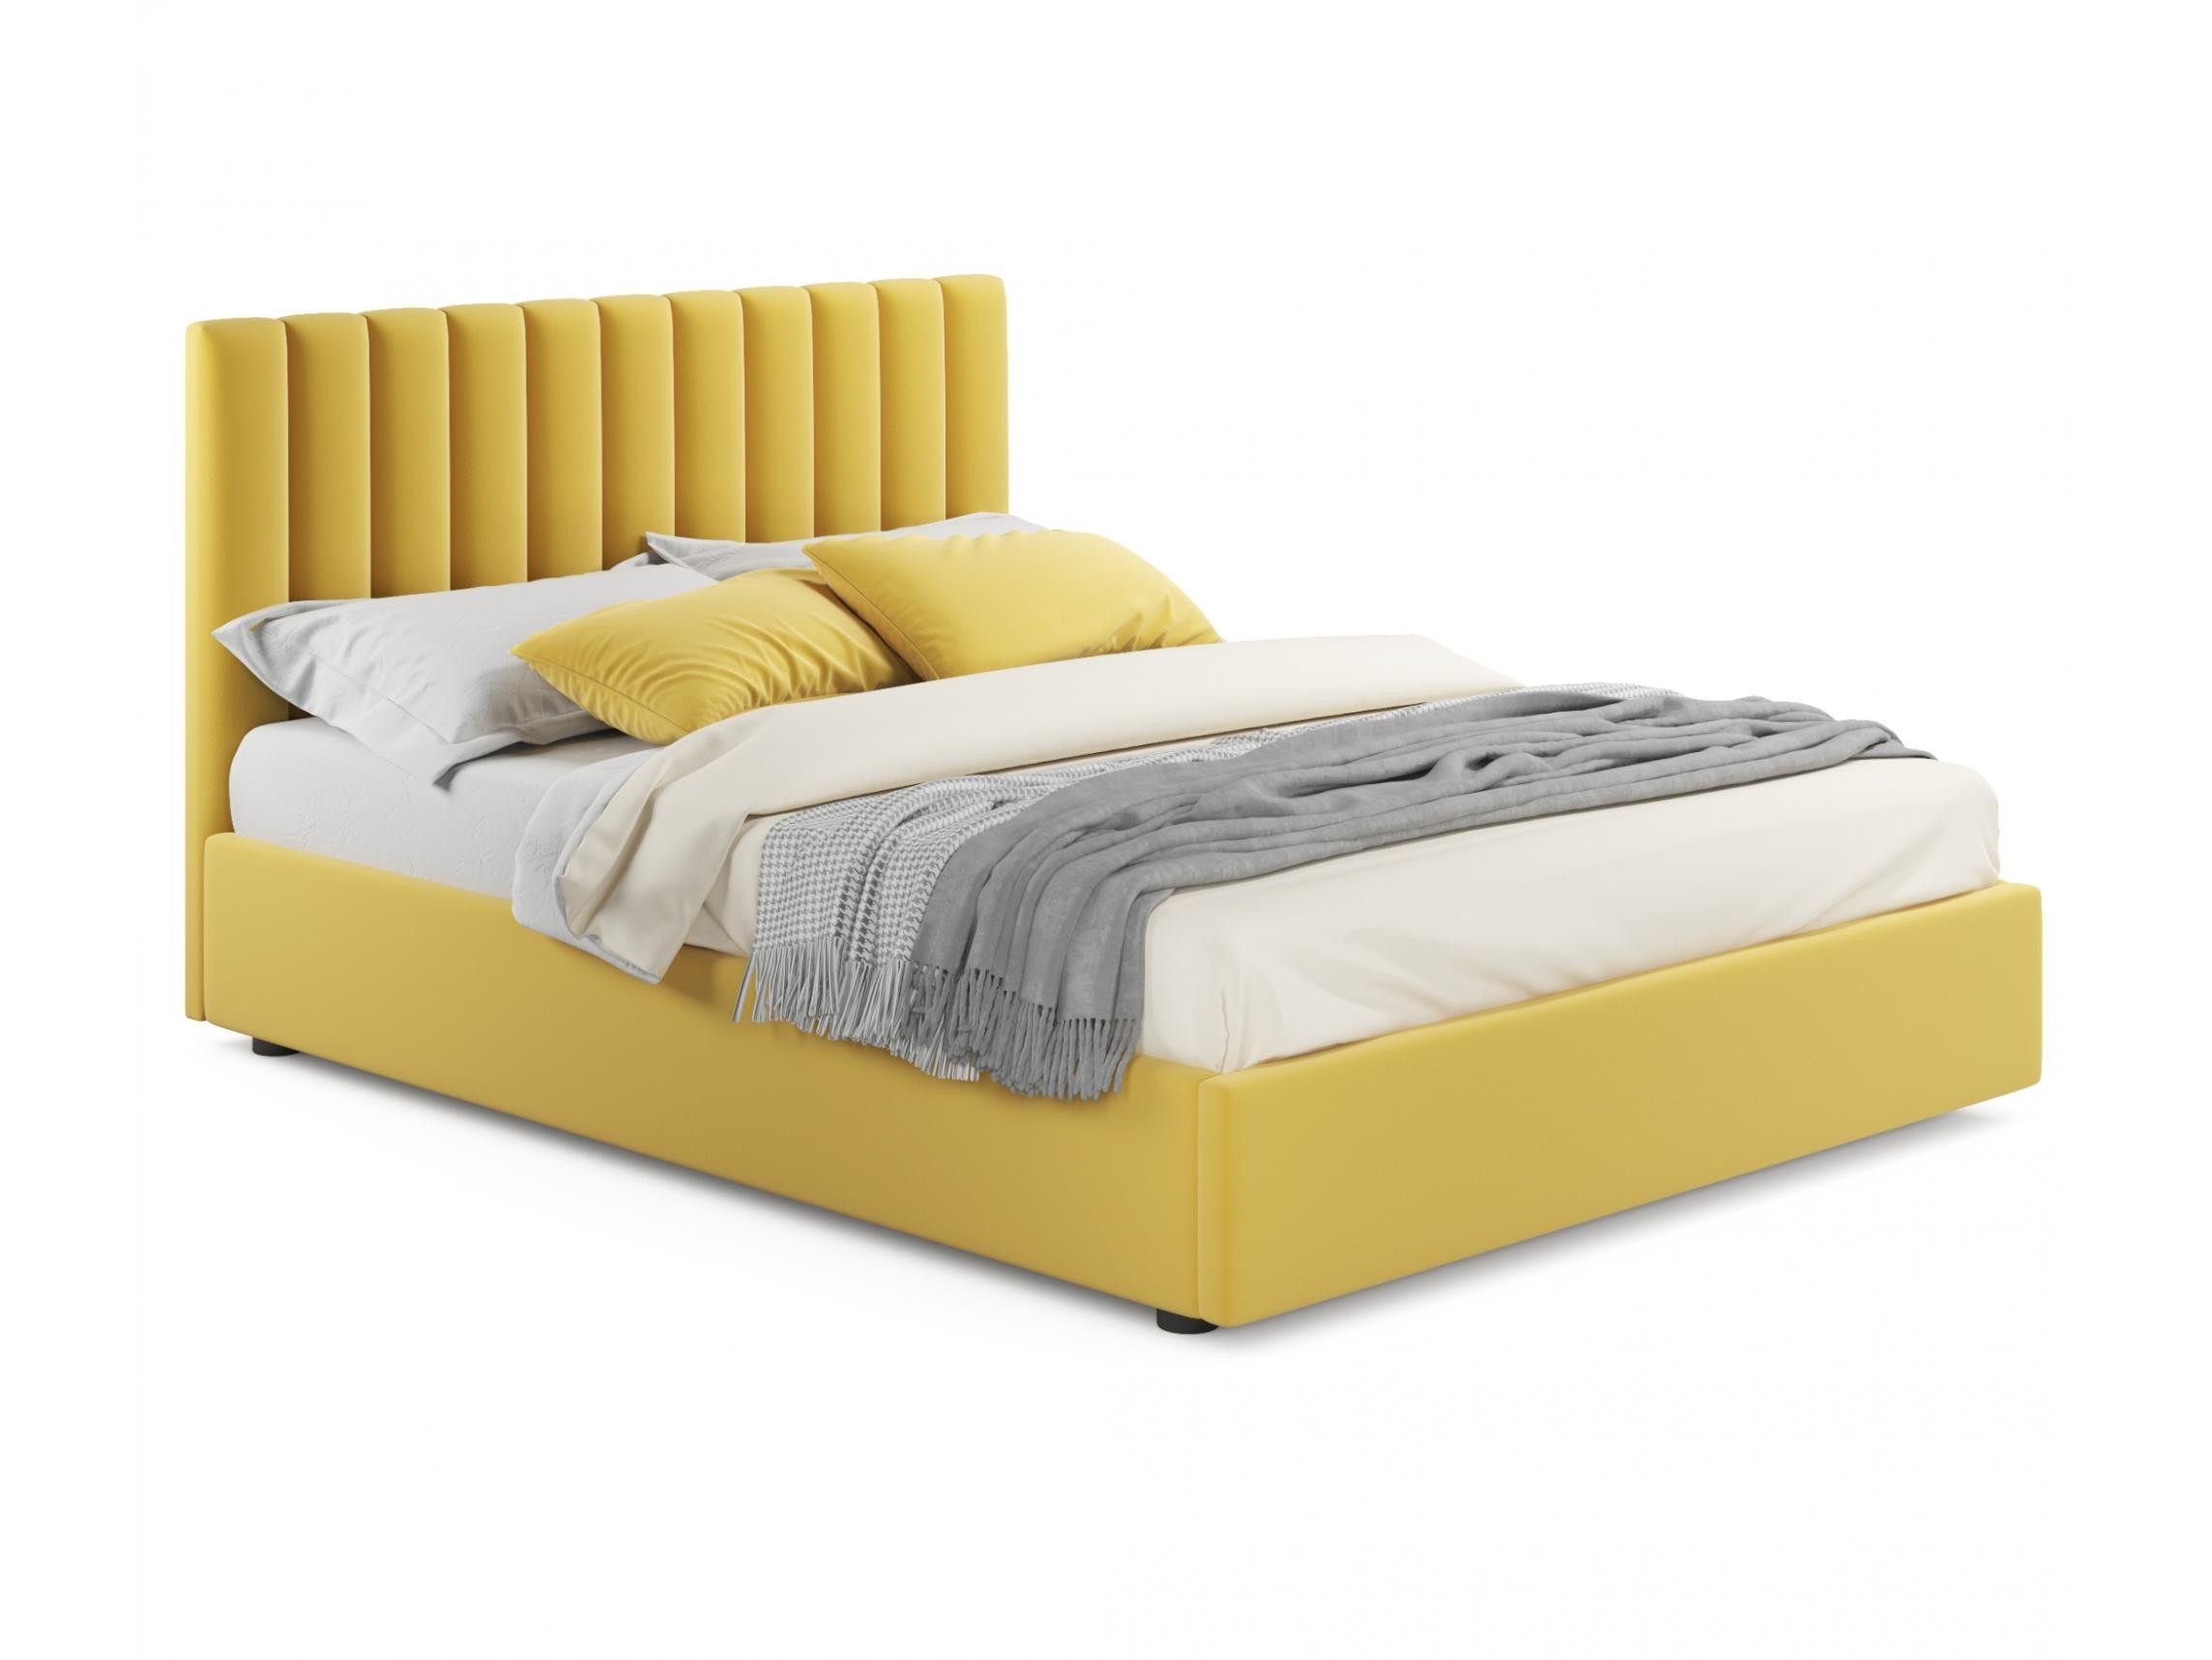 мягкая кровать olivia 1800 желтая с подъемным механизмом желтый желтый велюр дсп Мягкая кровать Olivia 1600 желтая с подъемным механизмом желтый, Желтый, Велюр, ДСП